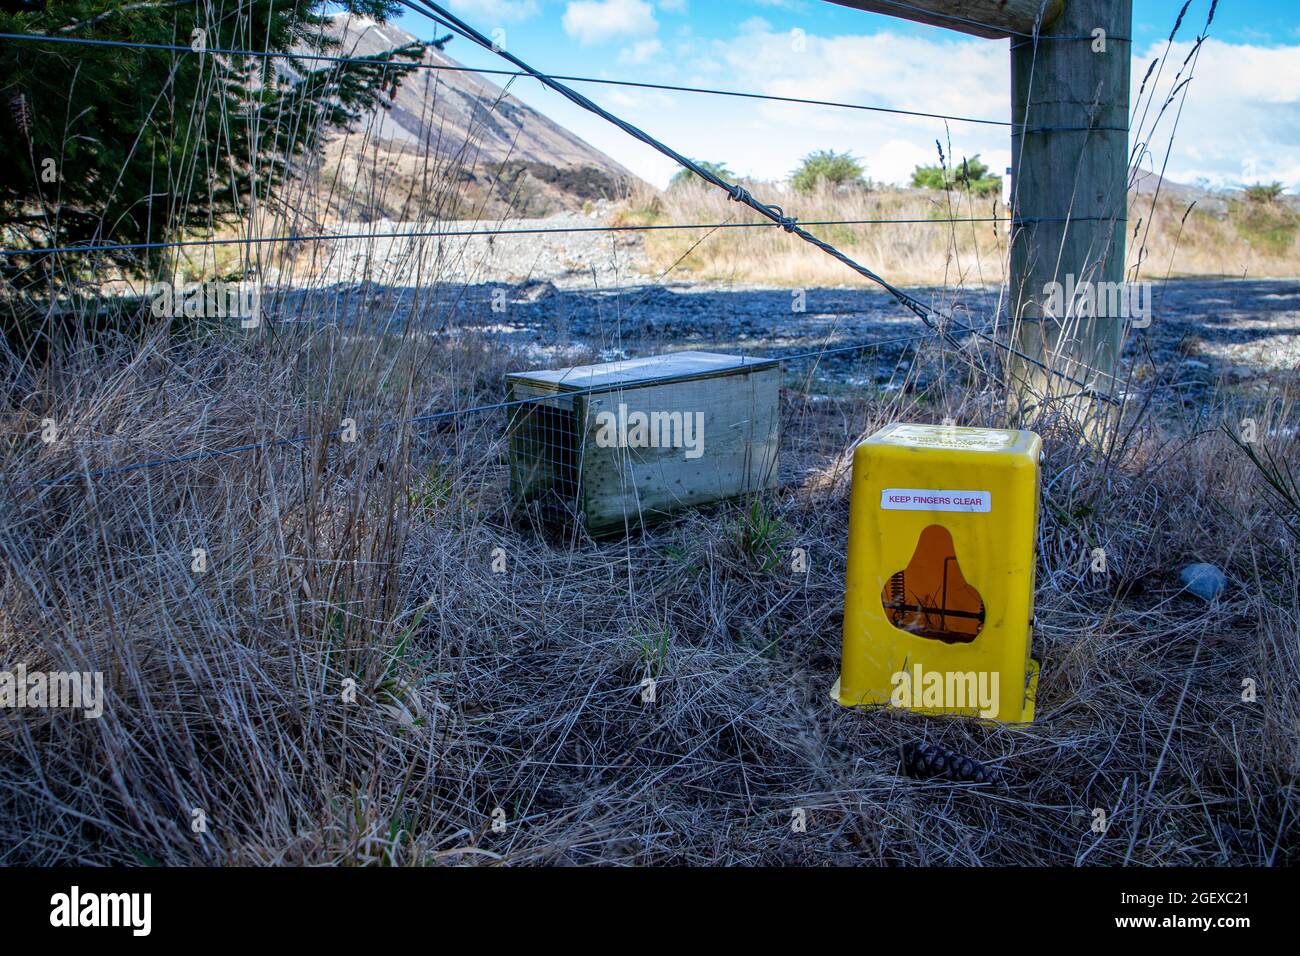 Las trampas puestas para capturar depredadores como estoats y ratas, se ceban con huevos de pollo y luego se pone la primavera, Canterbury, Nueva Zelanda Foto de stock